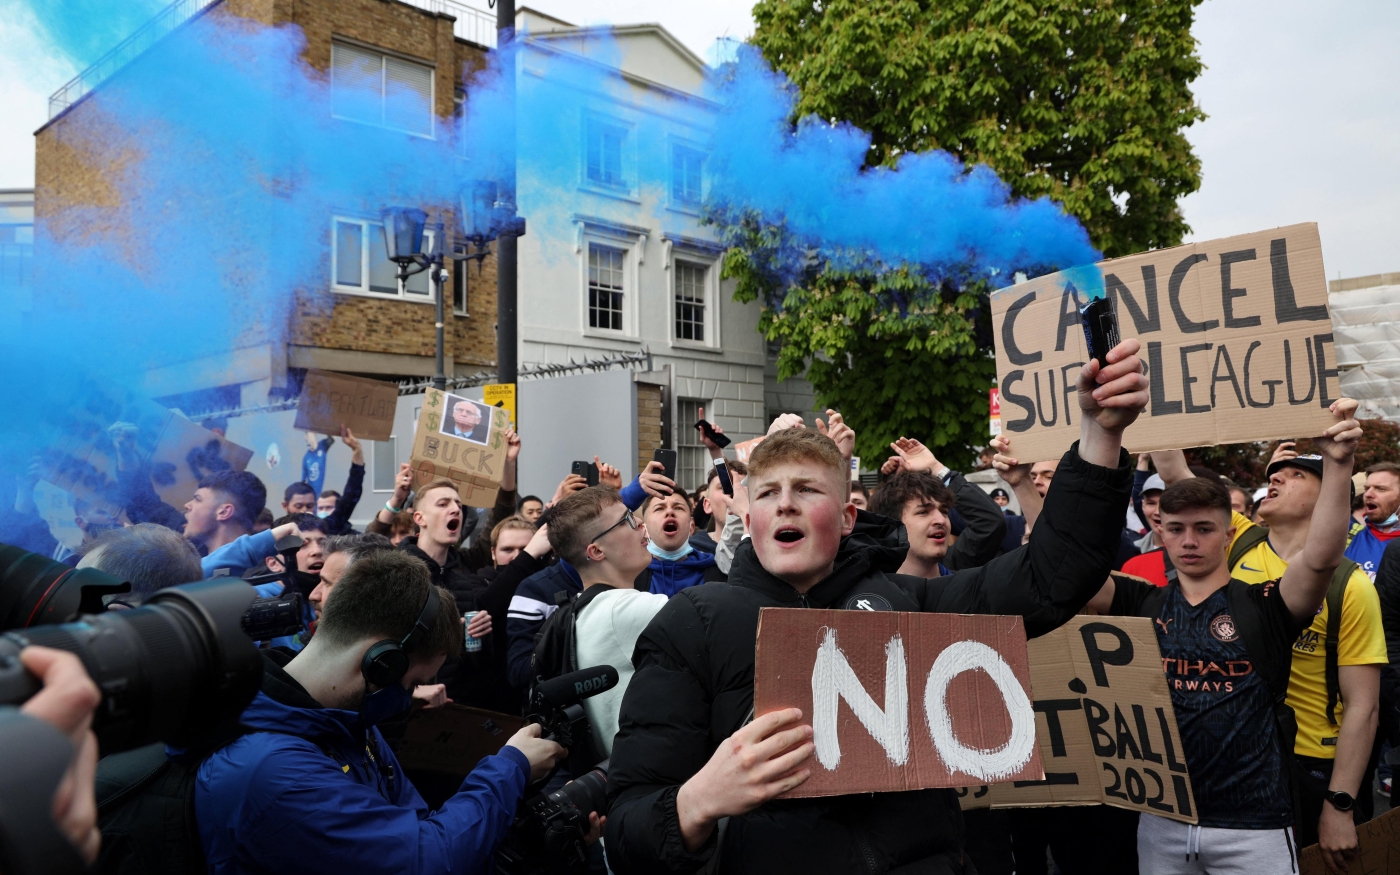 Des supporters protestent contre le projet de Super Ligue européenne devant Stamford Bridge, le stade de Chelsea, à Londres (AFP)